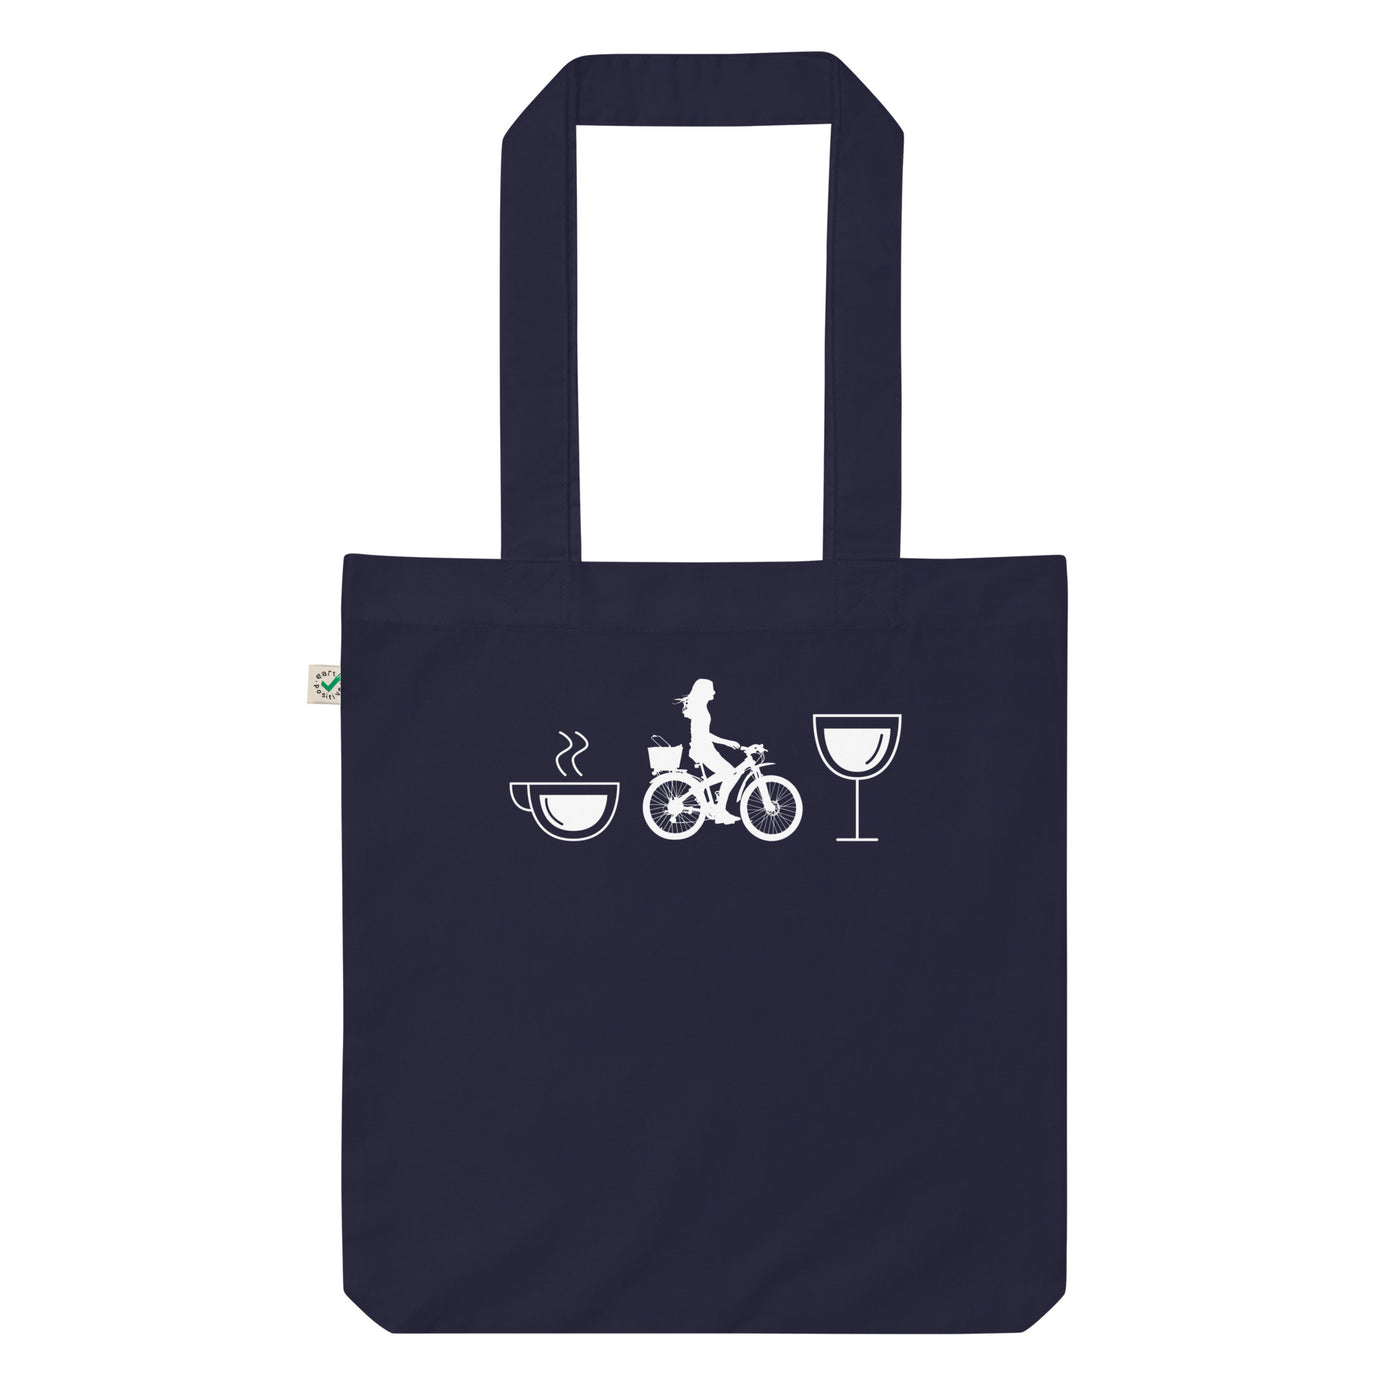 Kaffee, Wein Und Radfahren - Organic Einkaufstasche fahrrad